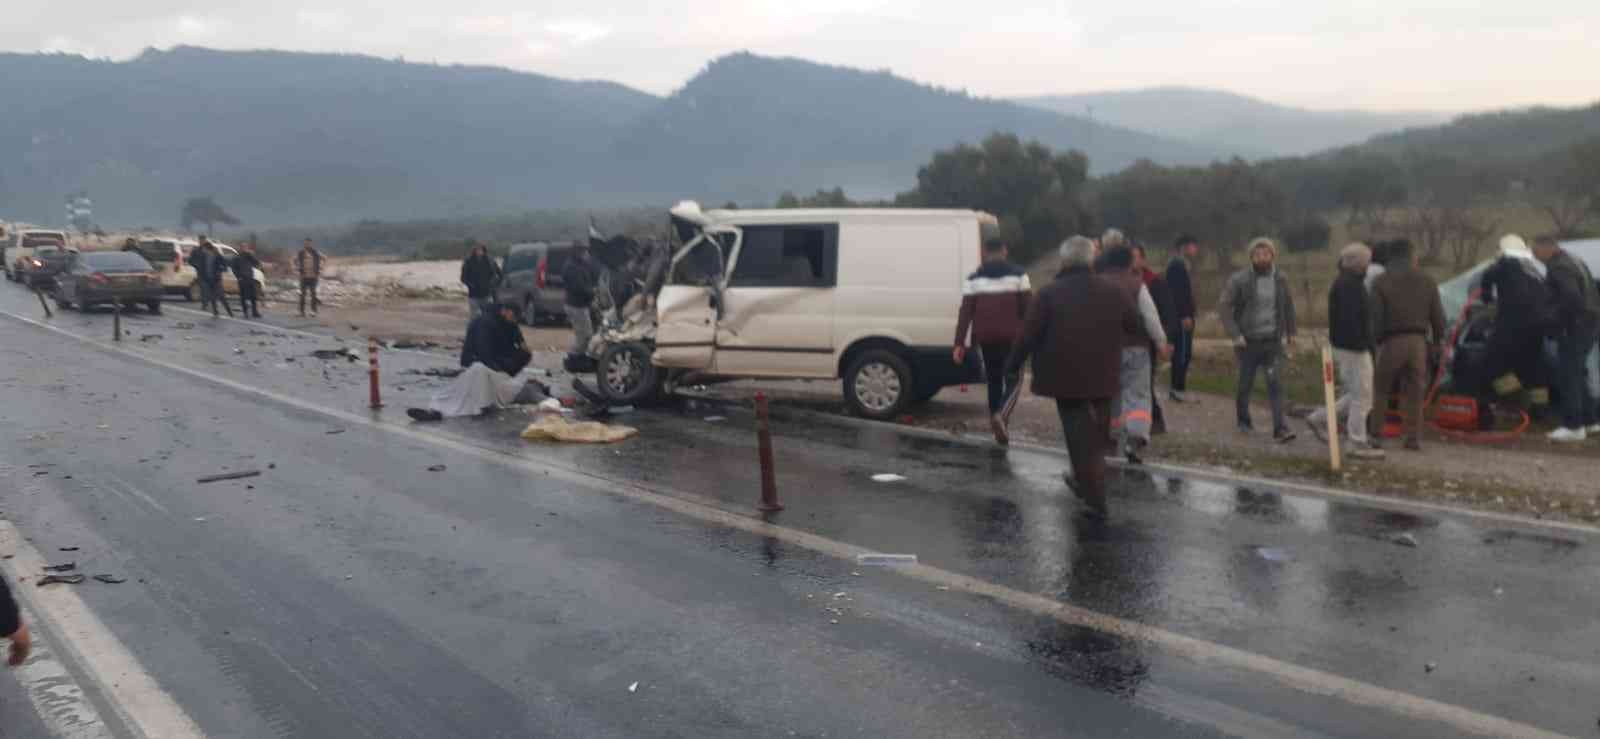 Aydın’da zincirleme trafik kazası: 1 ölü #aydin